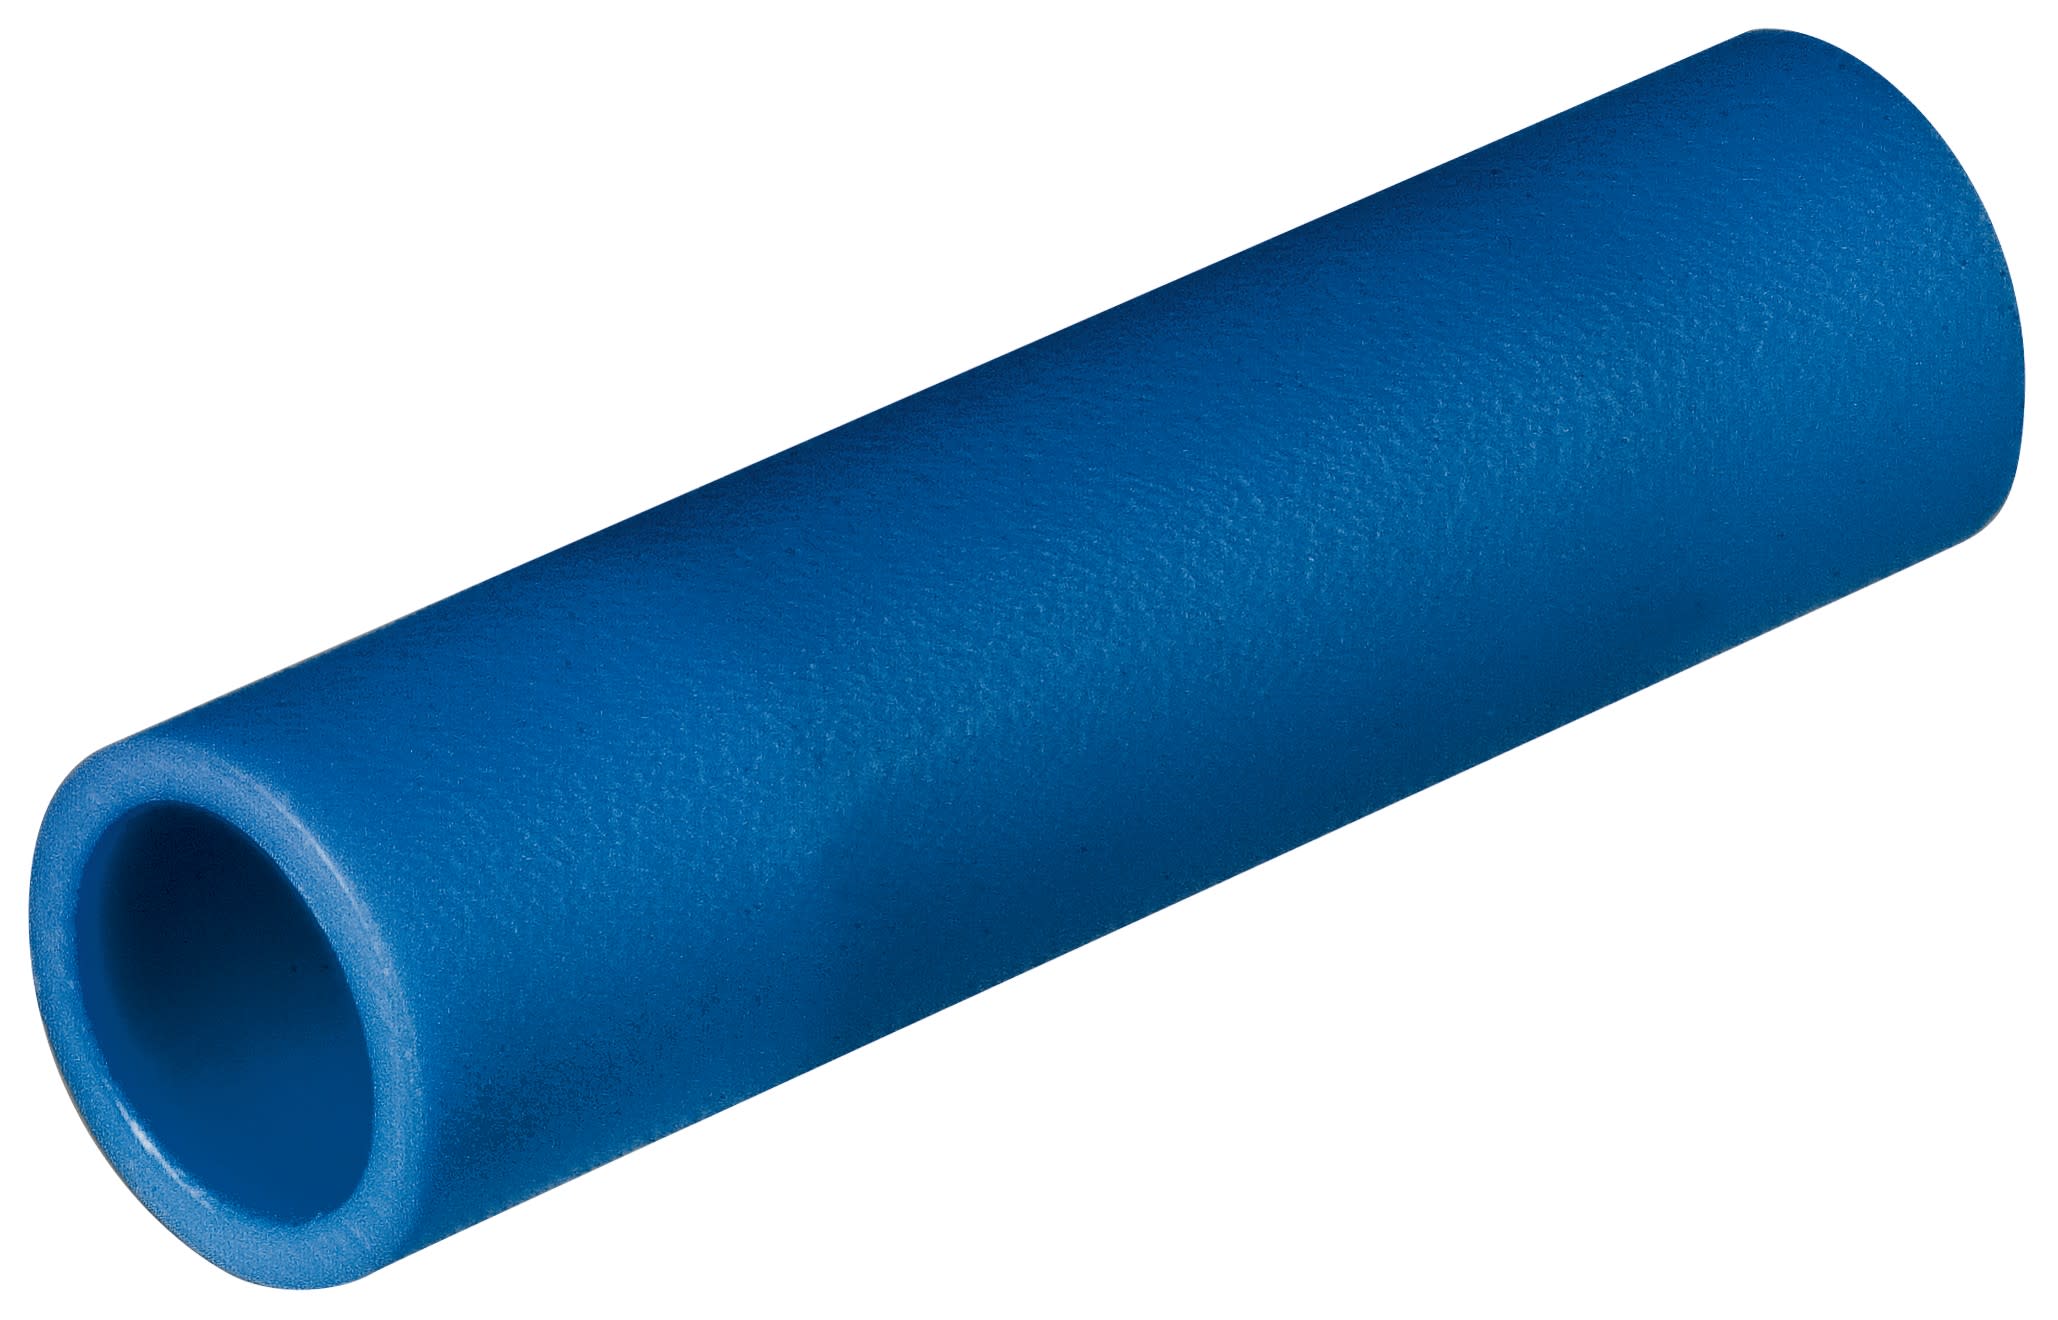 KNIPEX - Prolongateurs isoles bleu 1,5 - 2,5mm2 - 100 pieces